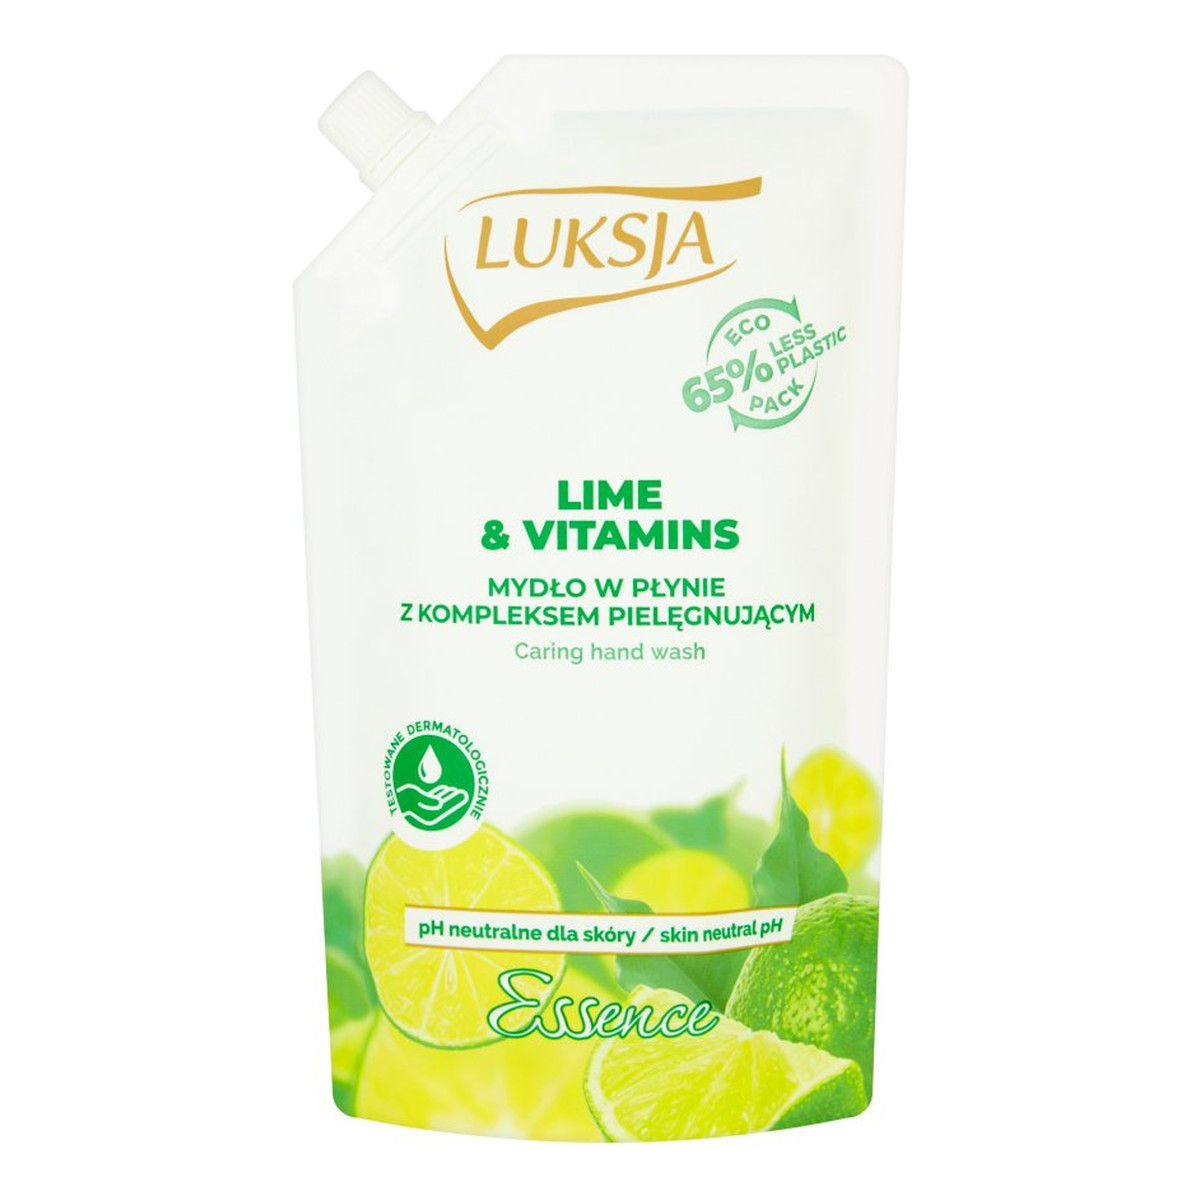 Luksja Essence Mydło w płynie opakowanie uzupełniające Lime & Vitamins 400ml